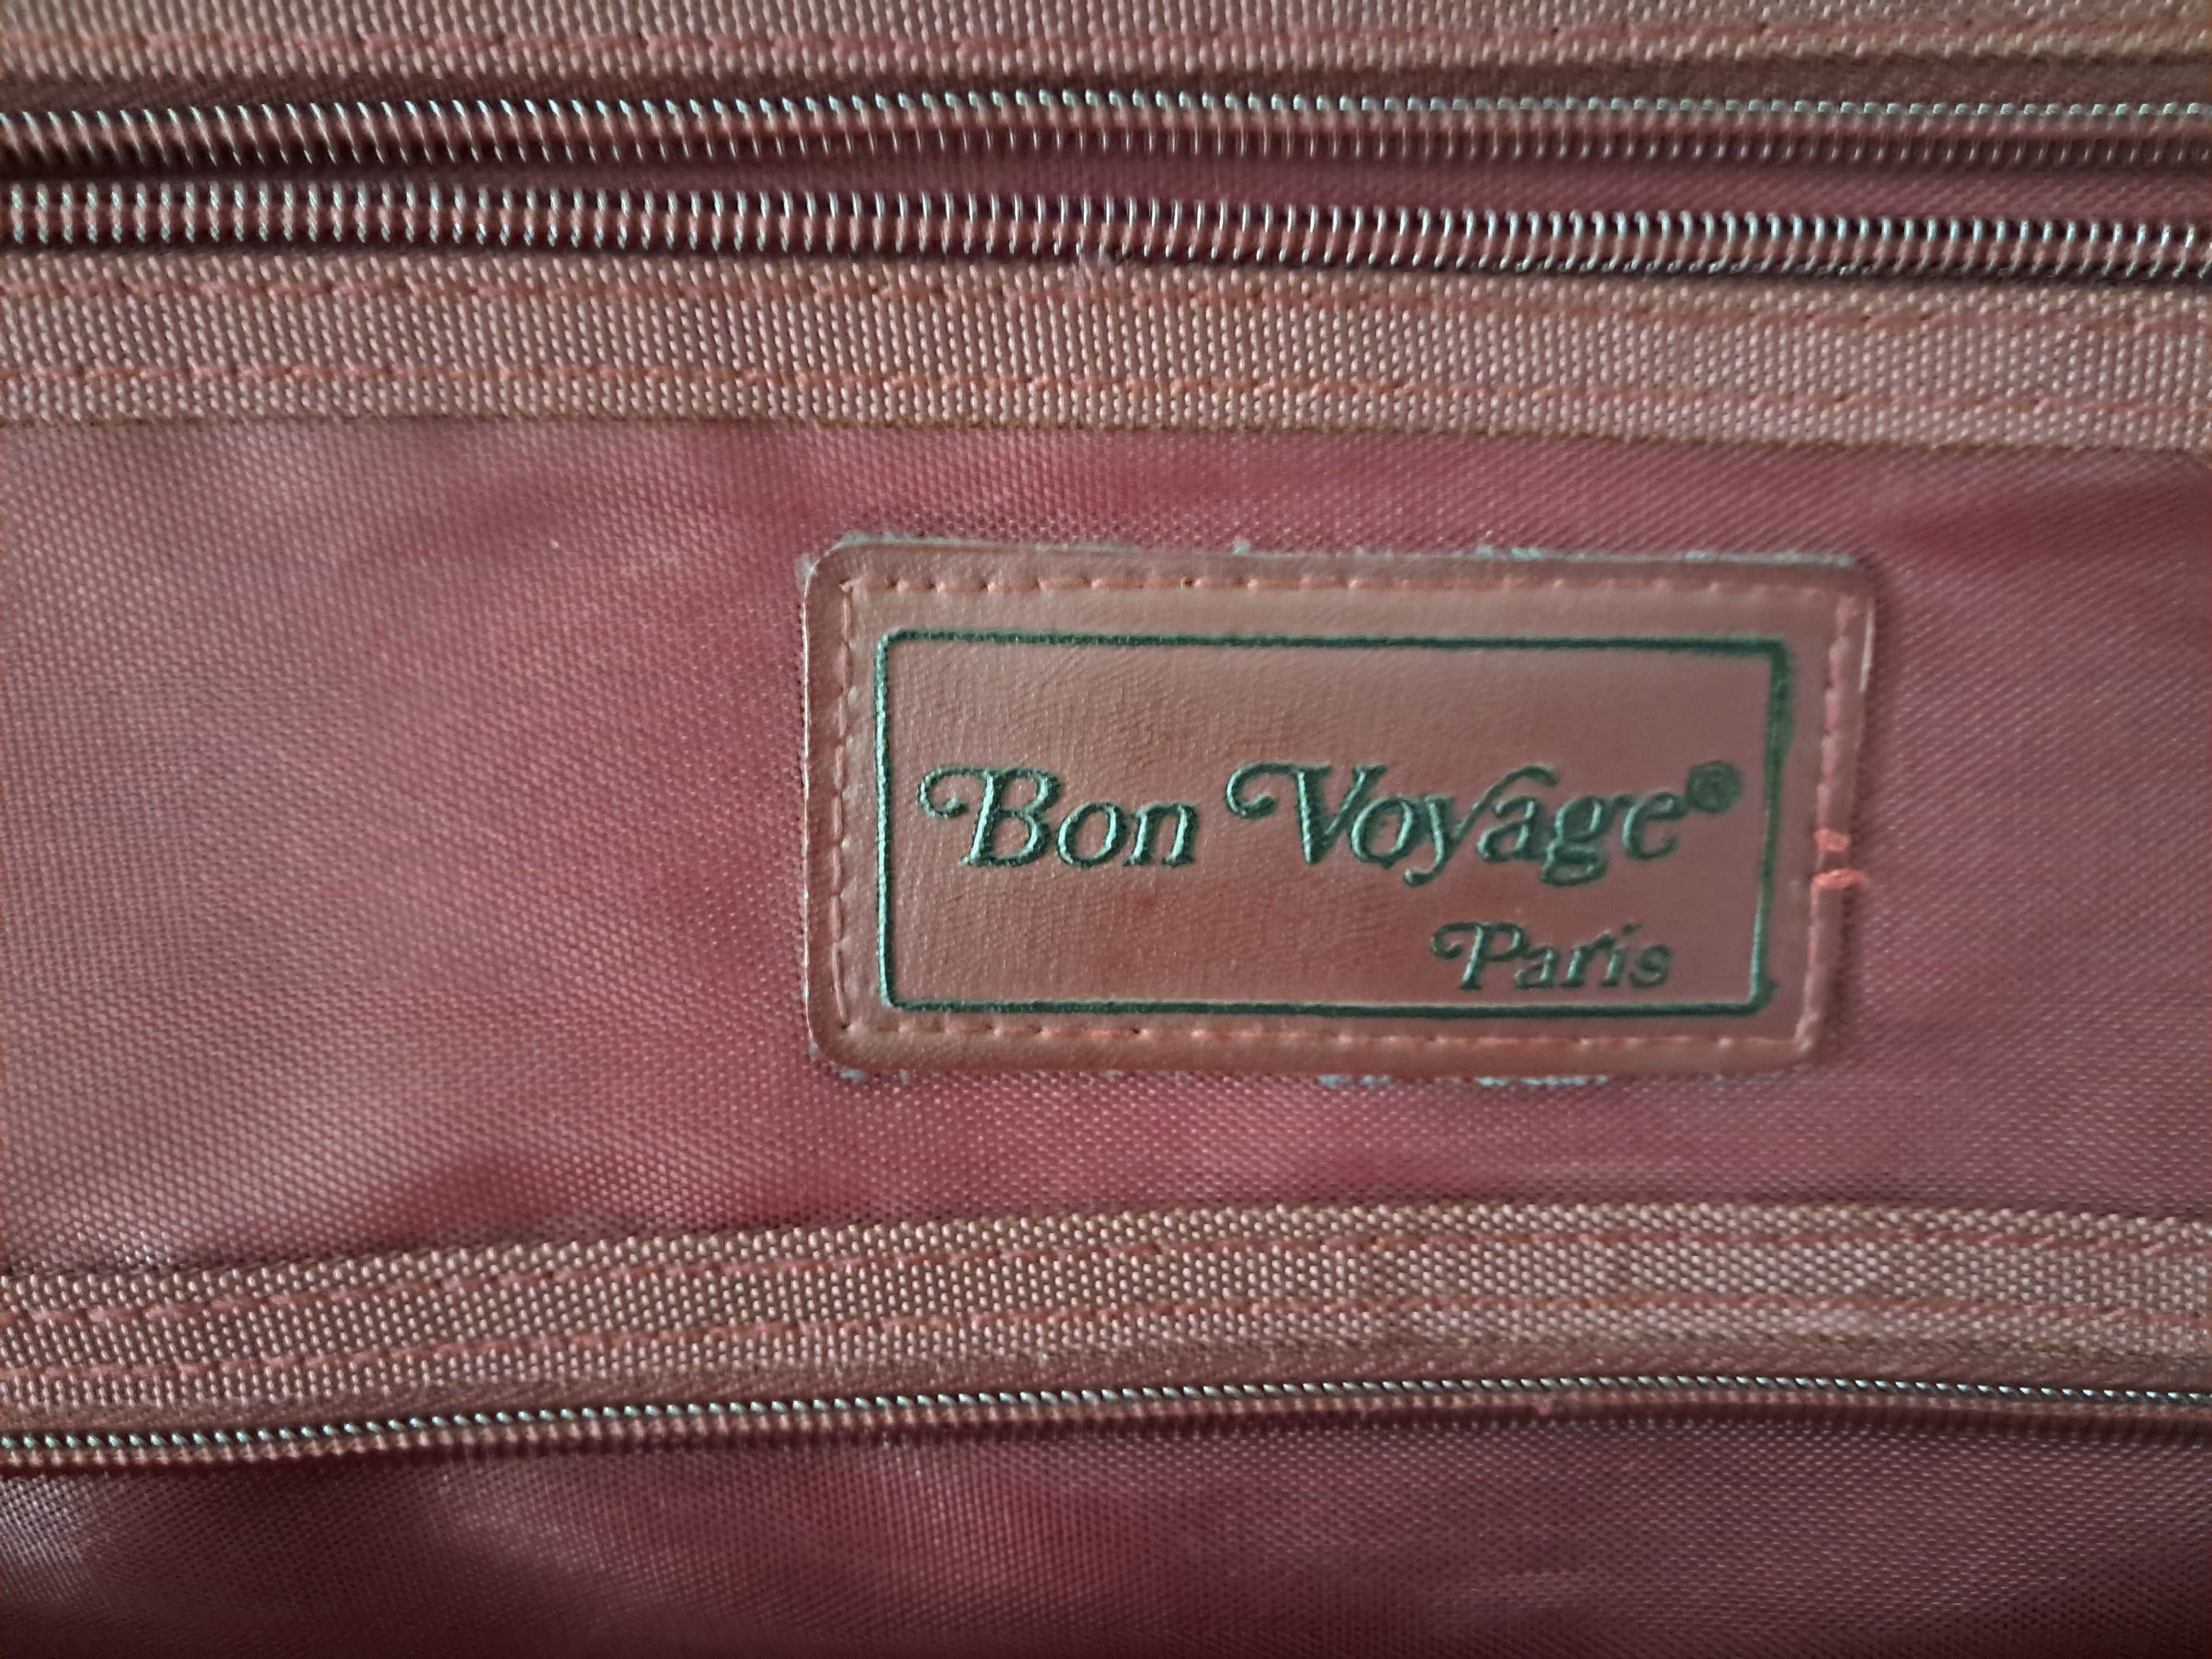 Torba-szafa podróżna, Bon Voyage Paris.